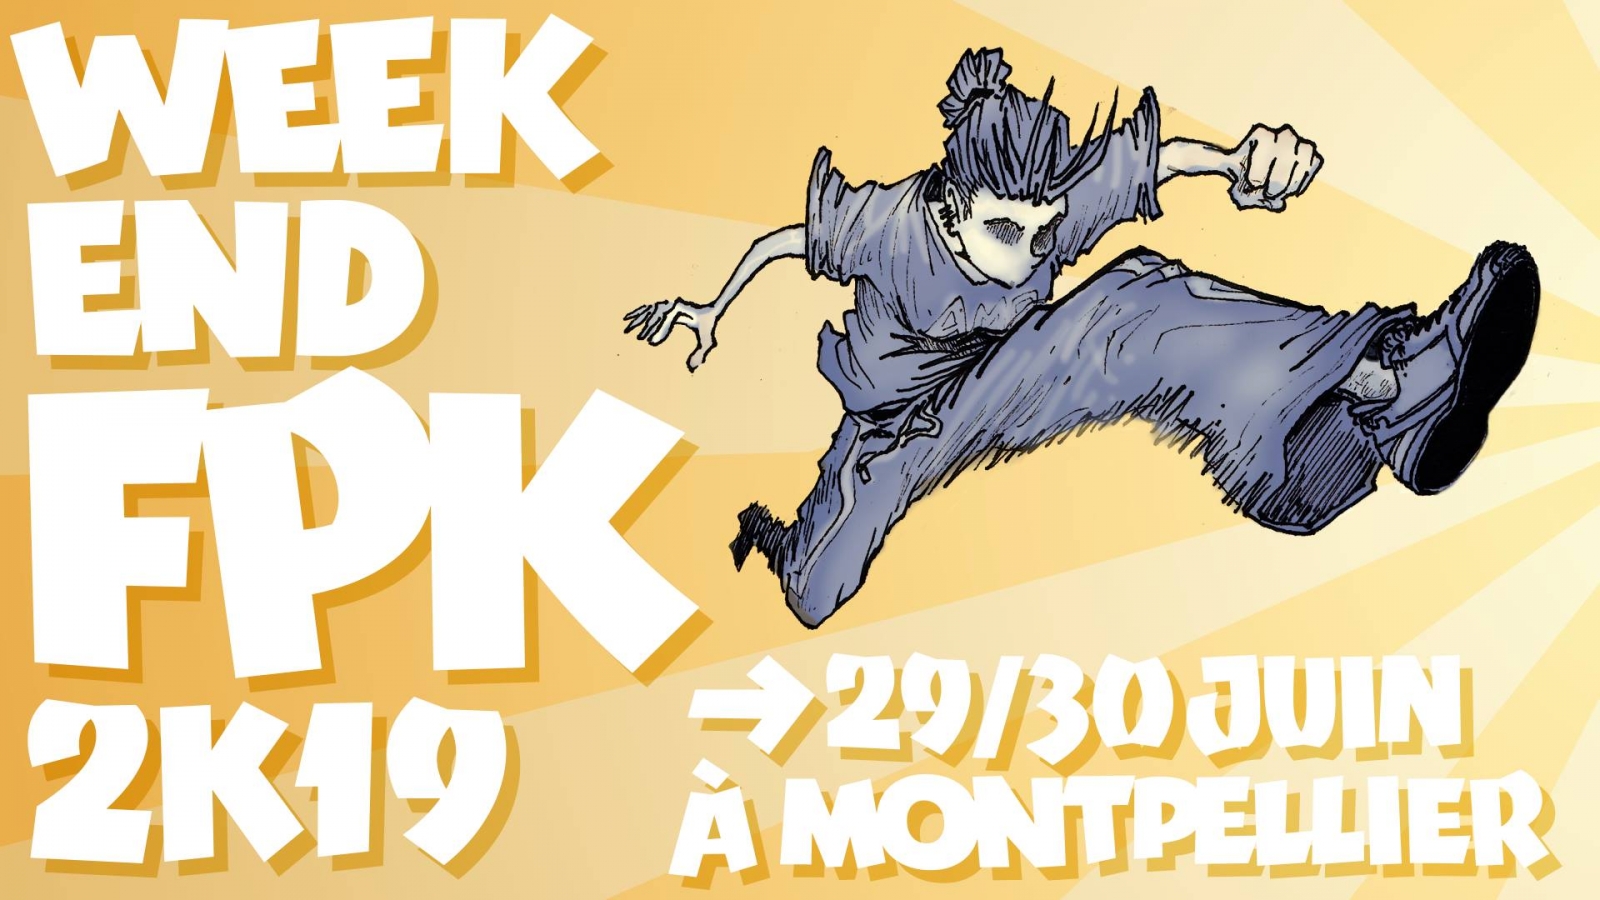 Week-end FPK 2019 poster